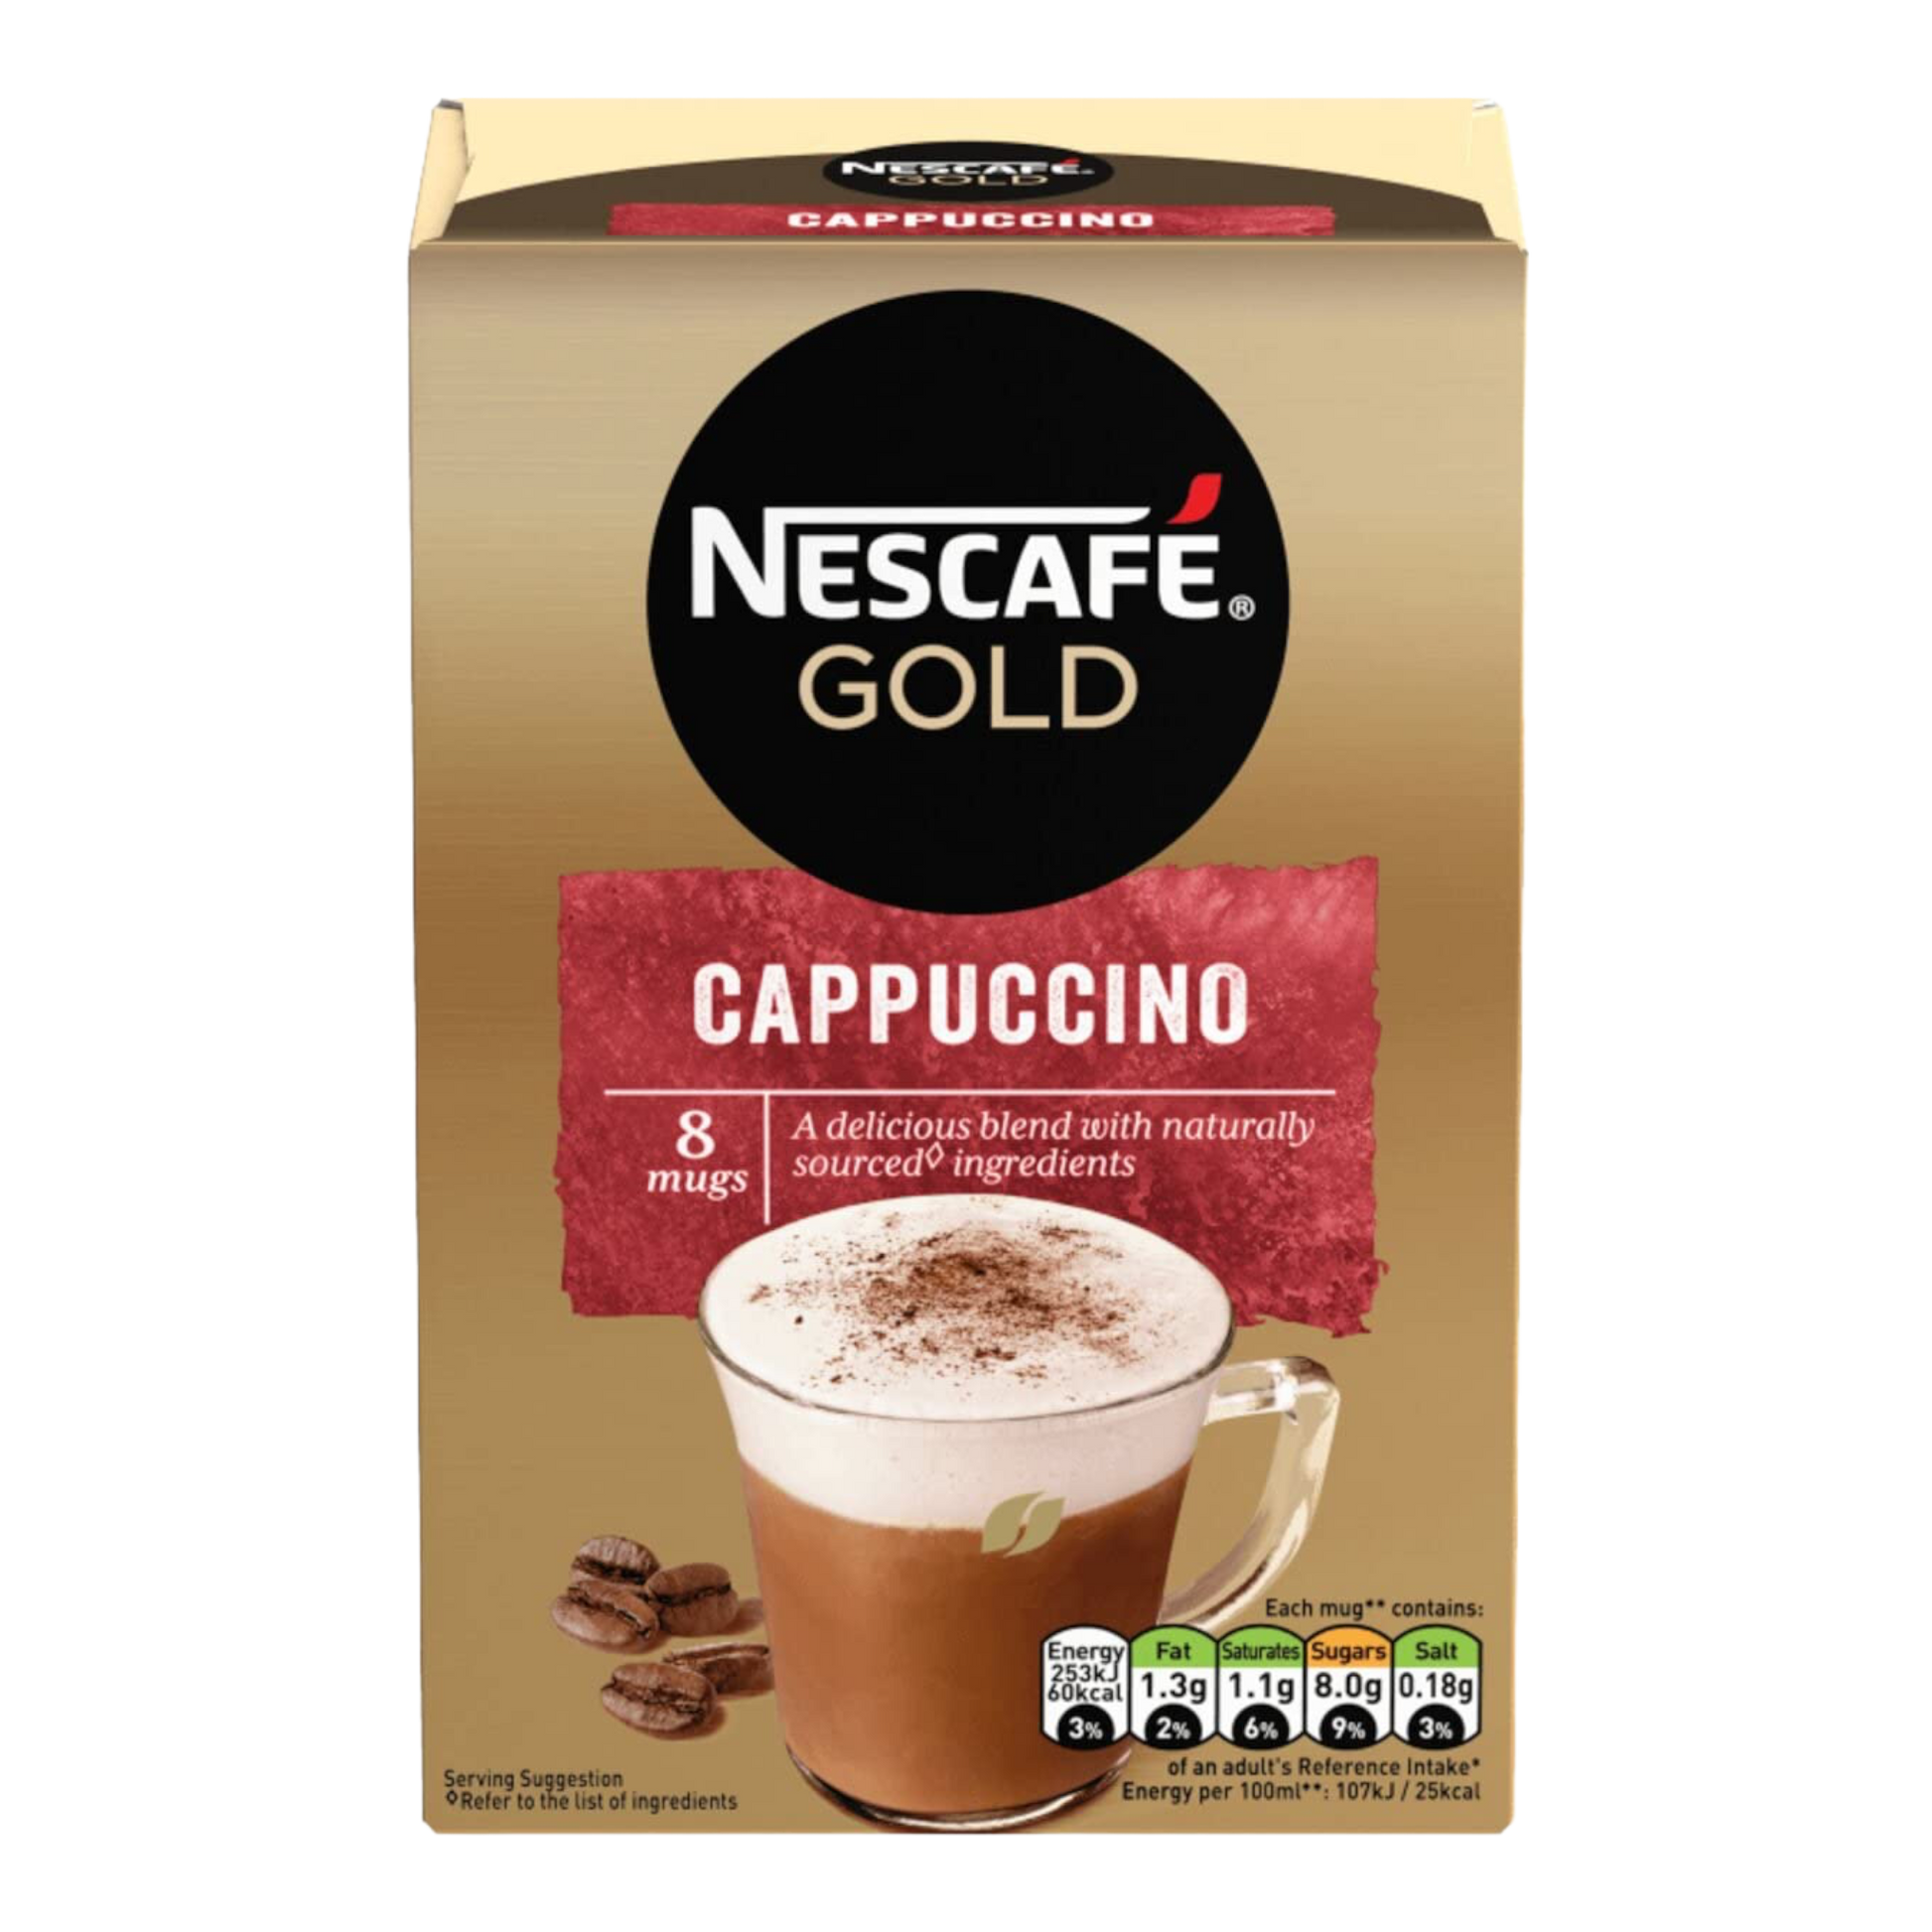 Nescafe Gold Cappuccino (8 sticks)